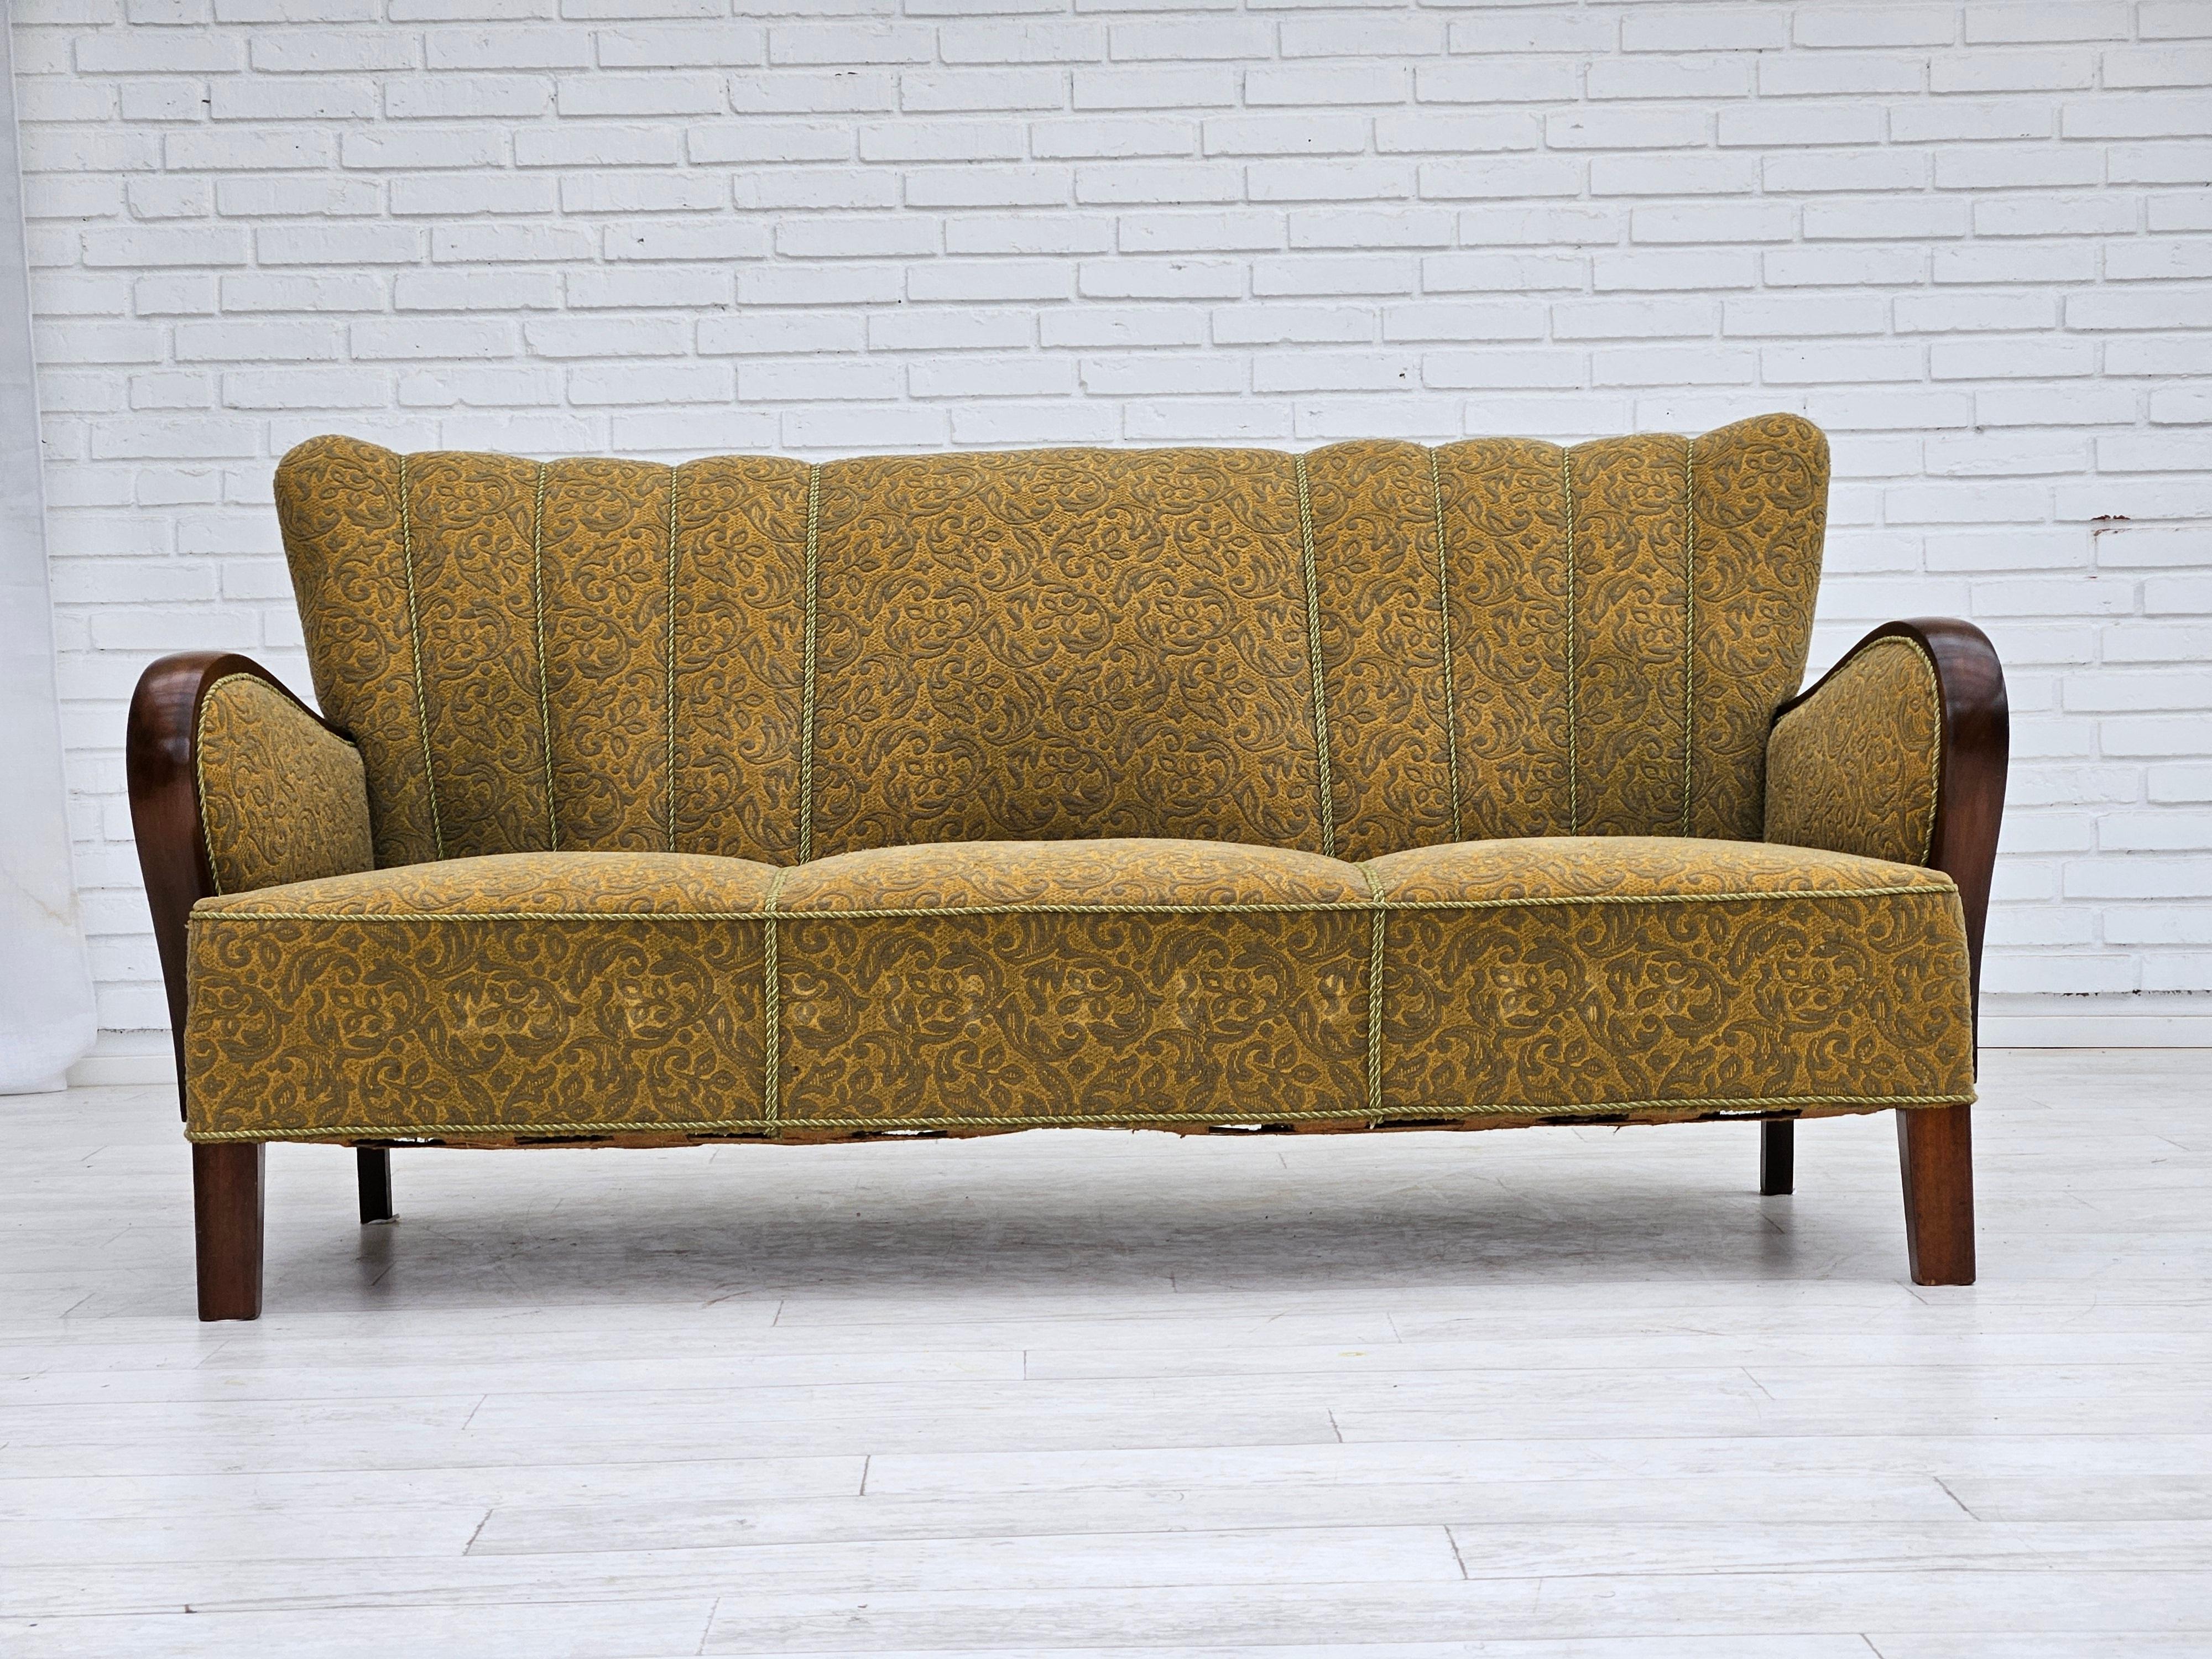 Dänisches 3-Sitzer-Sofa aus den 1960er Jahren in sehr gutem Originalzustand: keine Gerüche und keine Flecken. Hellgrüner Möbelstoff aus Baumwolle/Wolle, Messingfedern in der Sitzfläche, Beine aus Buchenholz. Hergestellt von einem dänischen